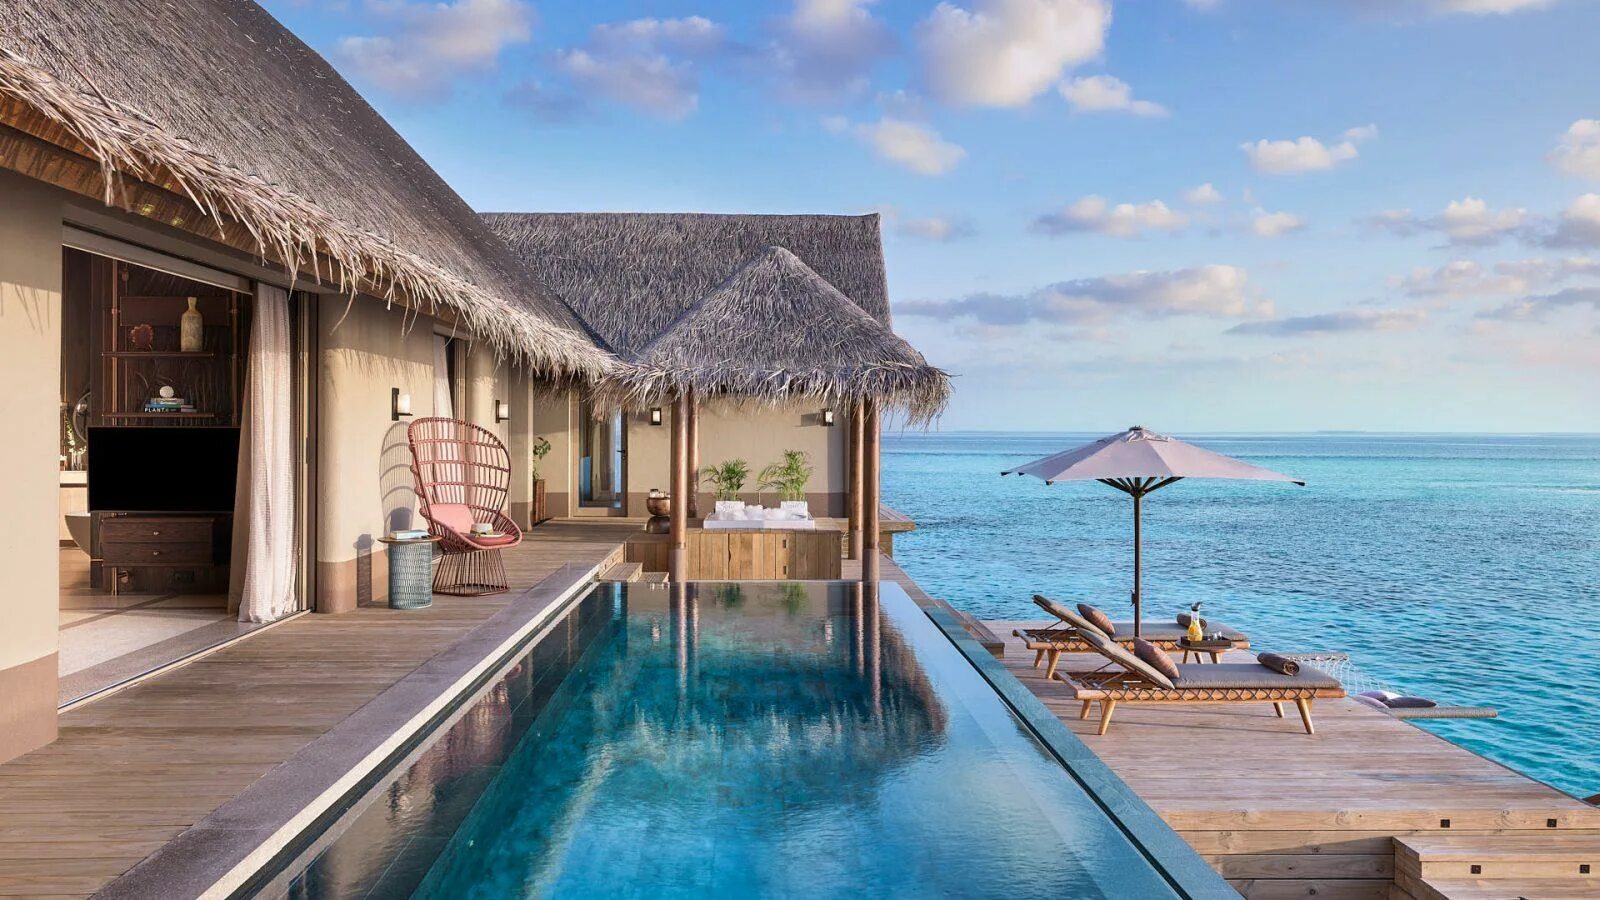 Joali being. Joali Мальдивы отель. Атолл Раа Мальдивы. Джоали беинг Мальдивы отель. Joali Maldives 5* Мальдивы (Water Villa with Pool).